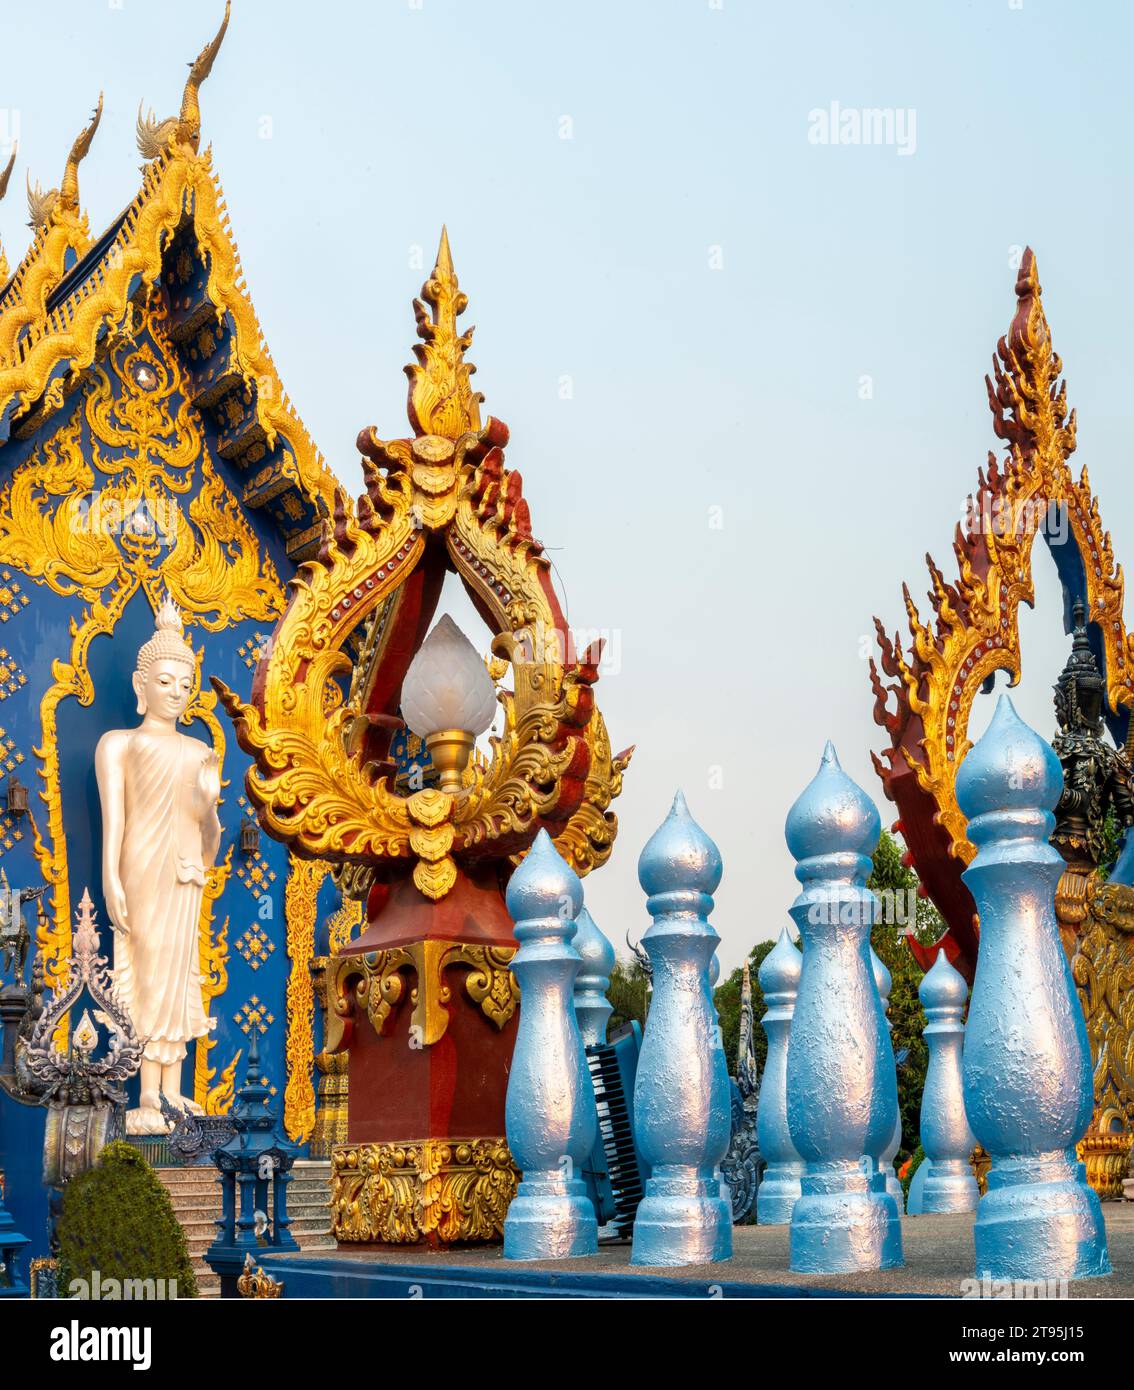 Esterno, splendidamente decorato con disegni blu e oro, statua di Buddha bianco-argento accanto all'ingresso del tempio e calda luce del tramonto che splende Foto Stock